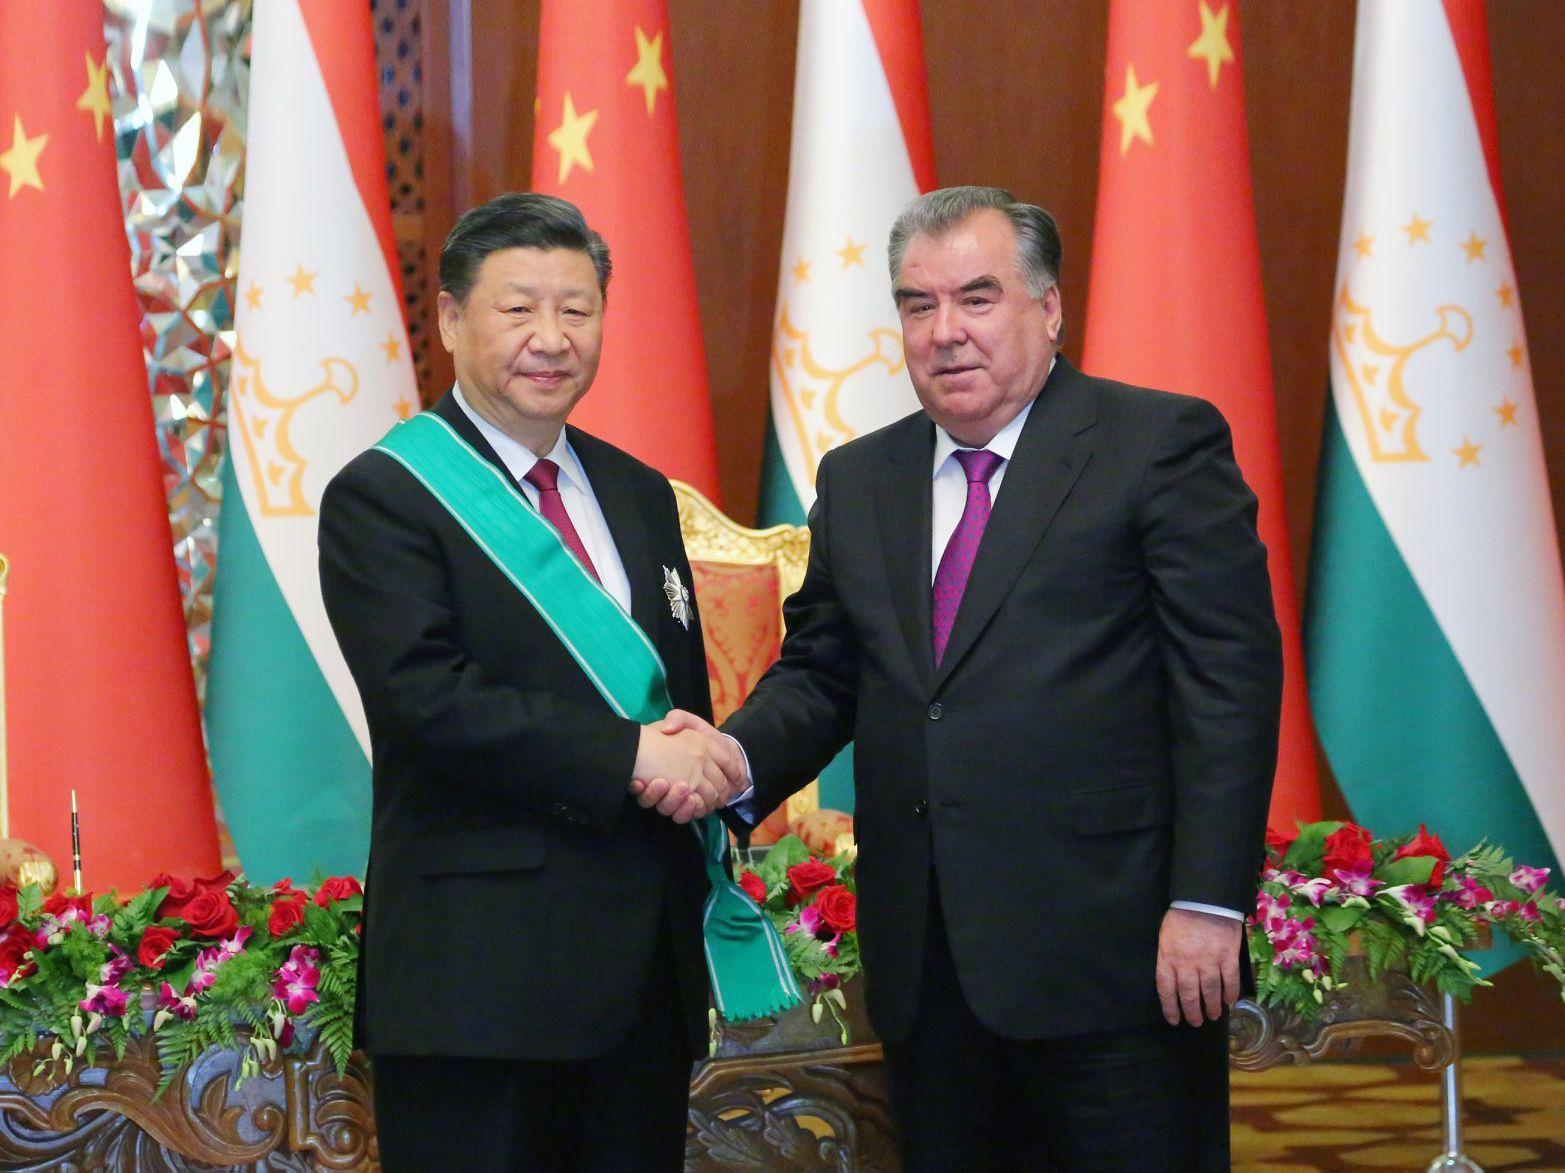 Xi Jinping to visit Tajikistan